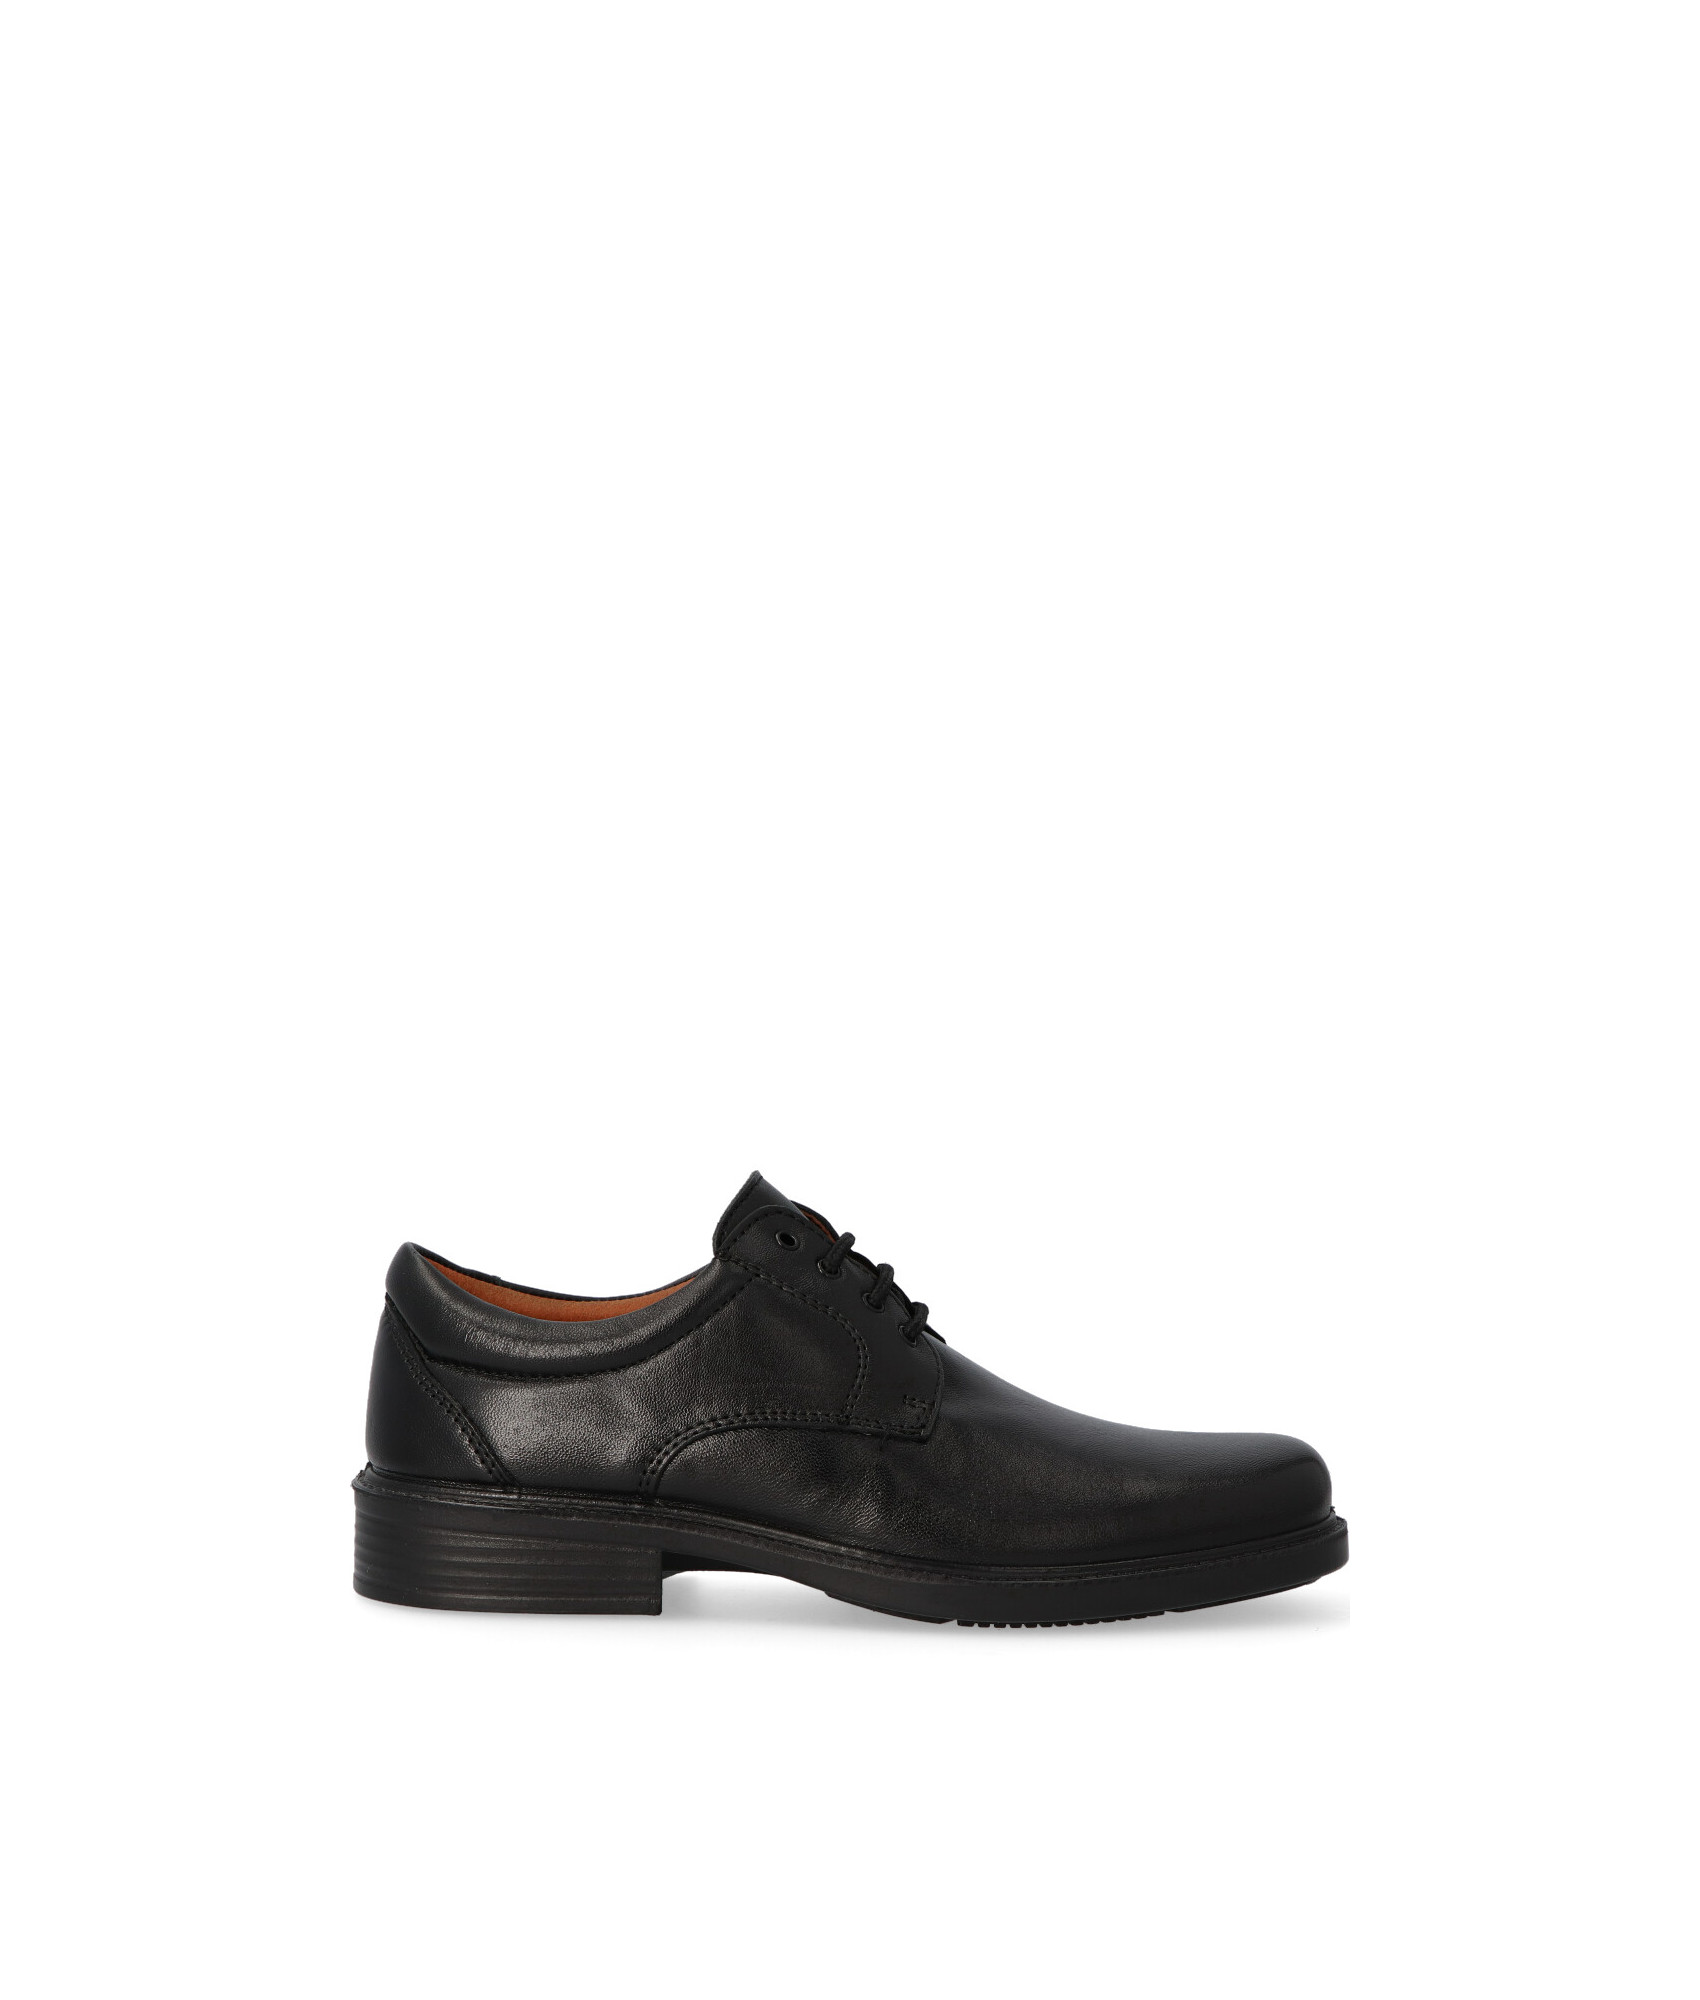 Zapato hombre impermeable cordon elástico piel negro de Lusetti Numero 40 -  Color NEGRO